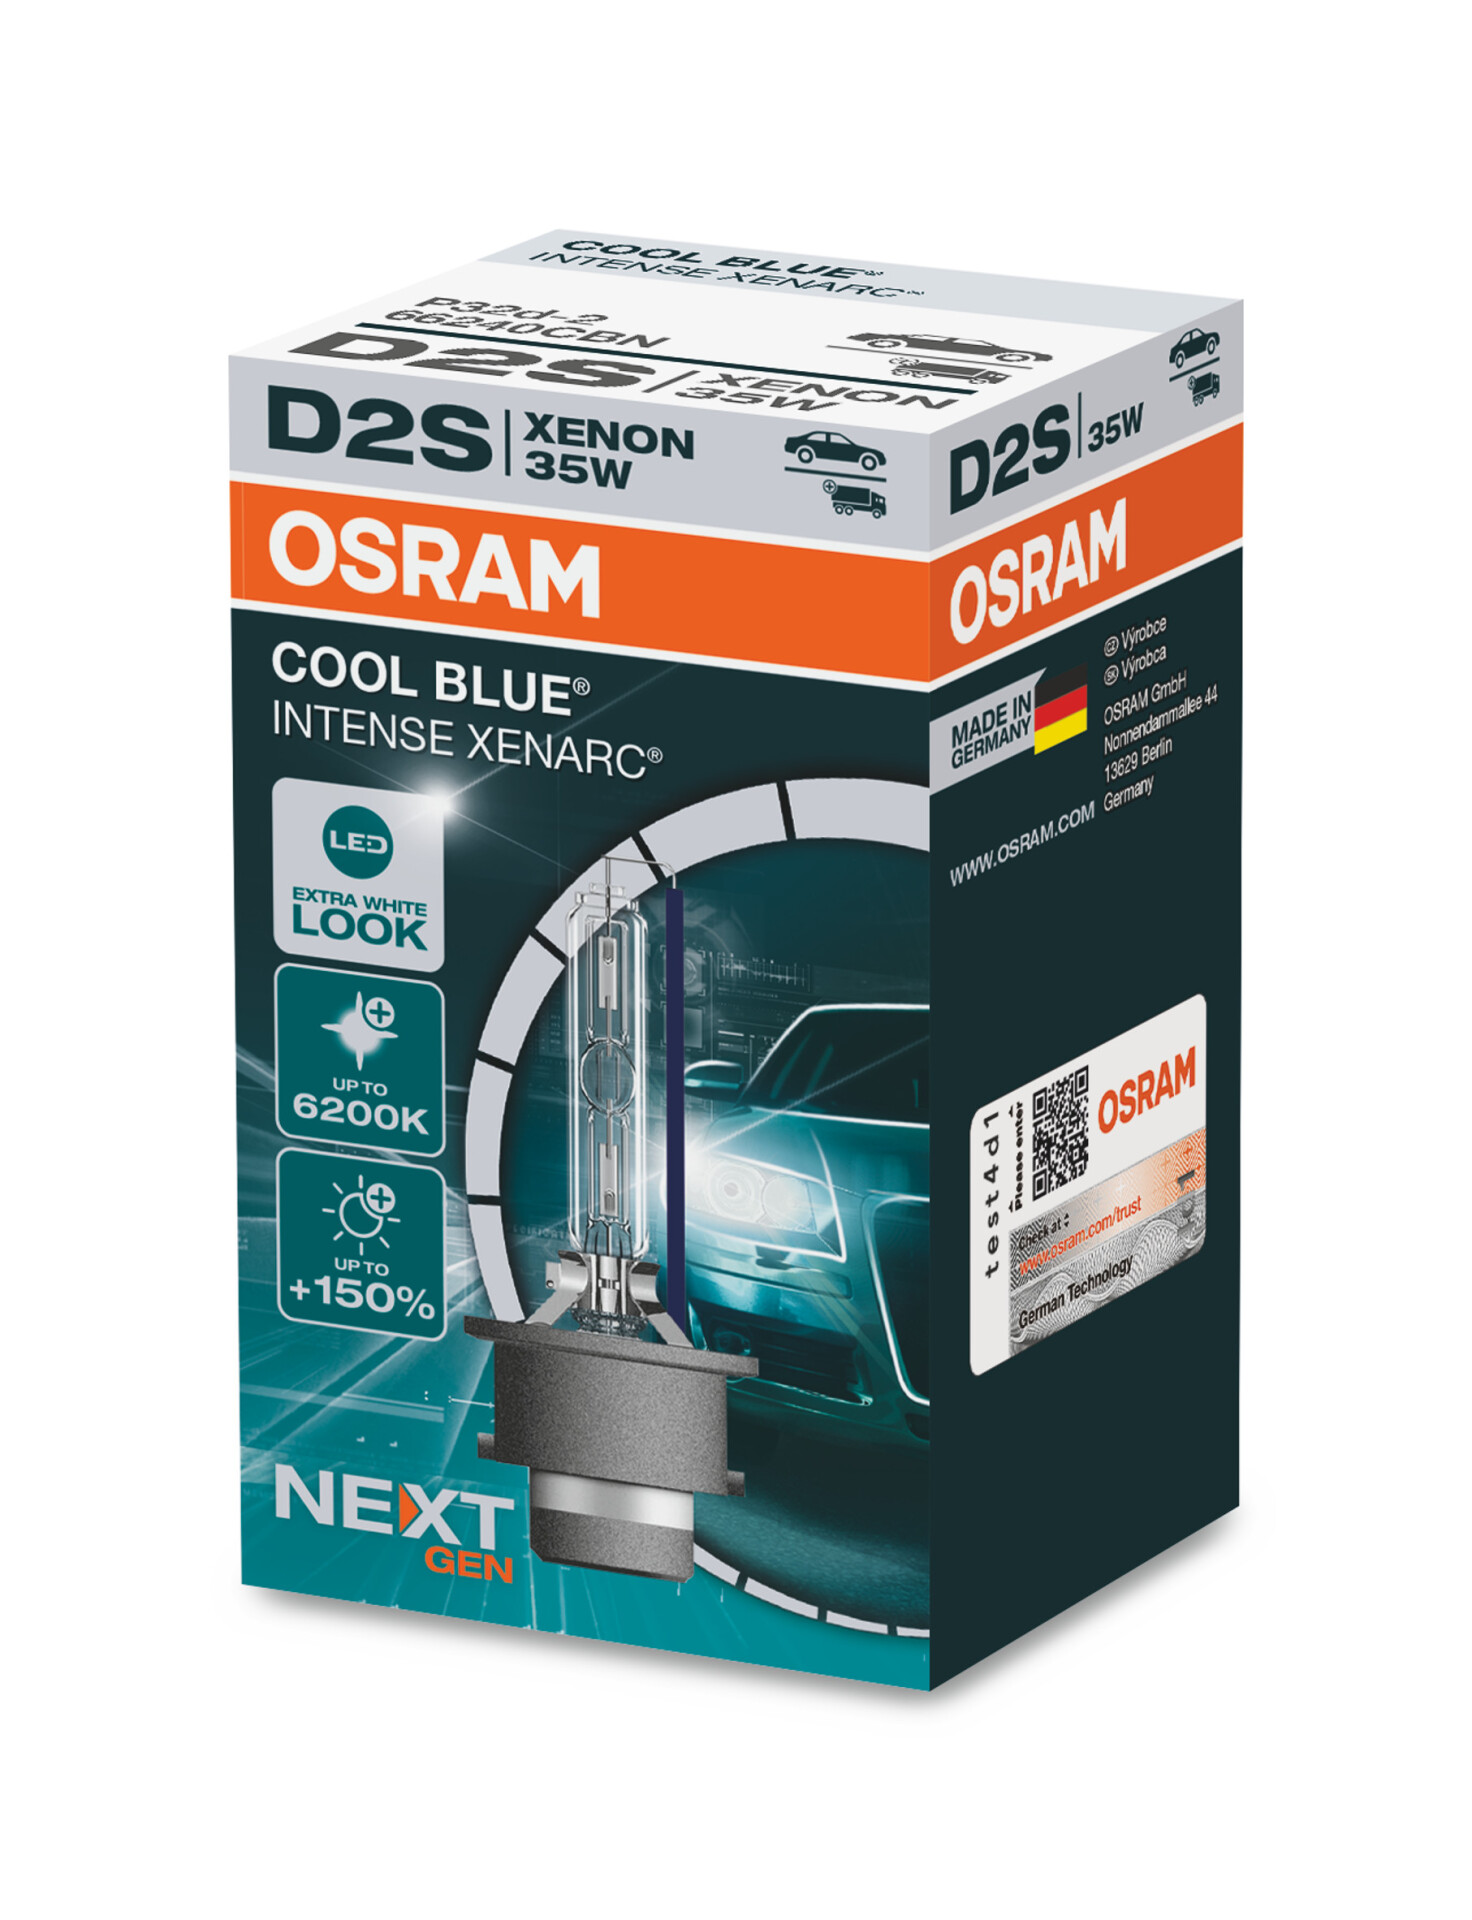 OSRAM  XENARC COOL BLUE INTENSE D2S next Gen (1 Stk.), Art.-Nr. 66240CBN